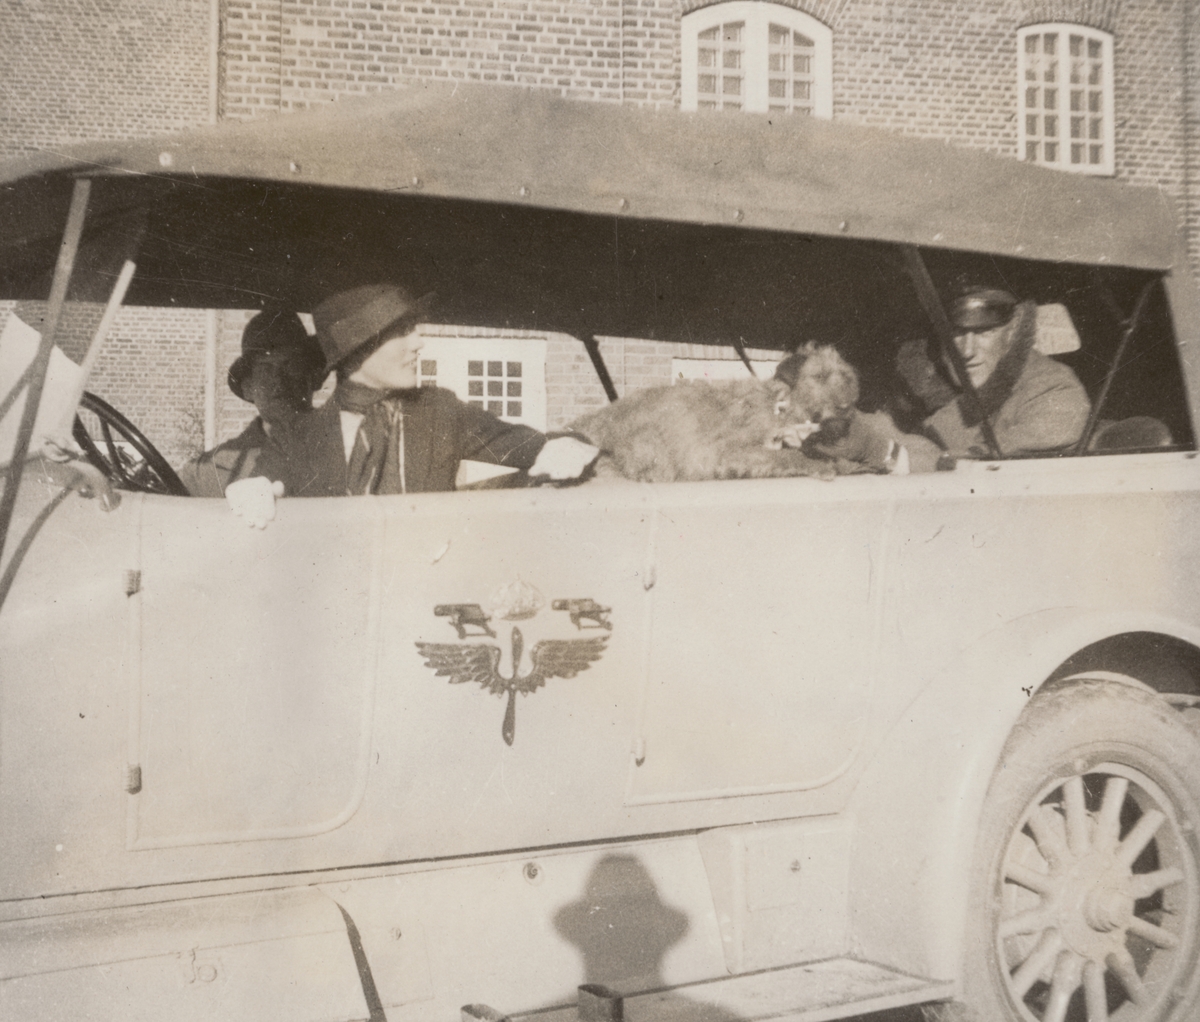 Tre personer och en hund sitter i Flygkompaniets bil, cirka 1925. Mannen till vänster är militären Birger Schyberg, mannen till höger är militären Nils Kindberg. Kvinnan heter Anna Linderstam.

Text i album: "Jan. 1925. Strängnäs. Birger. AL. NK. Muffsie."